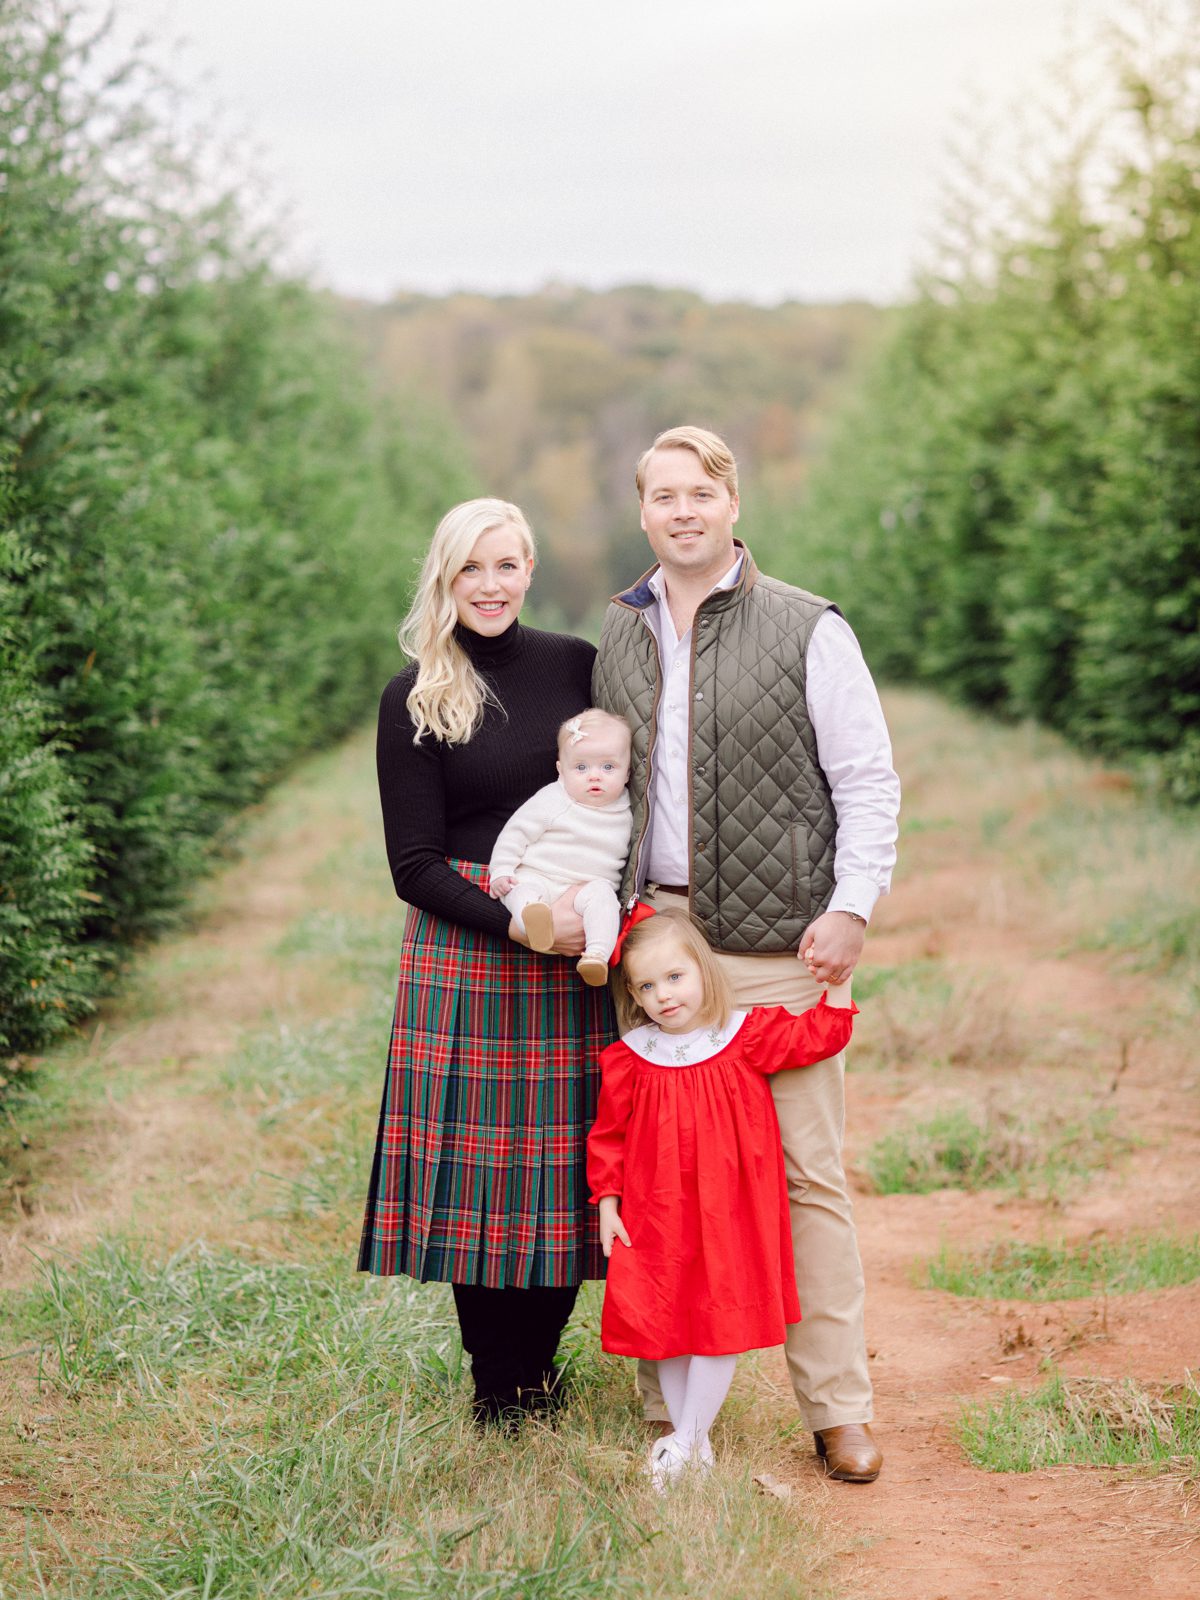 Christmas tree farm family photography Oconee County, GA